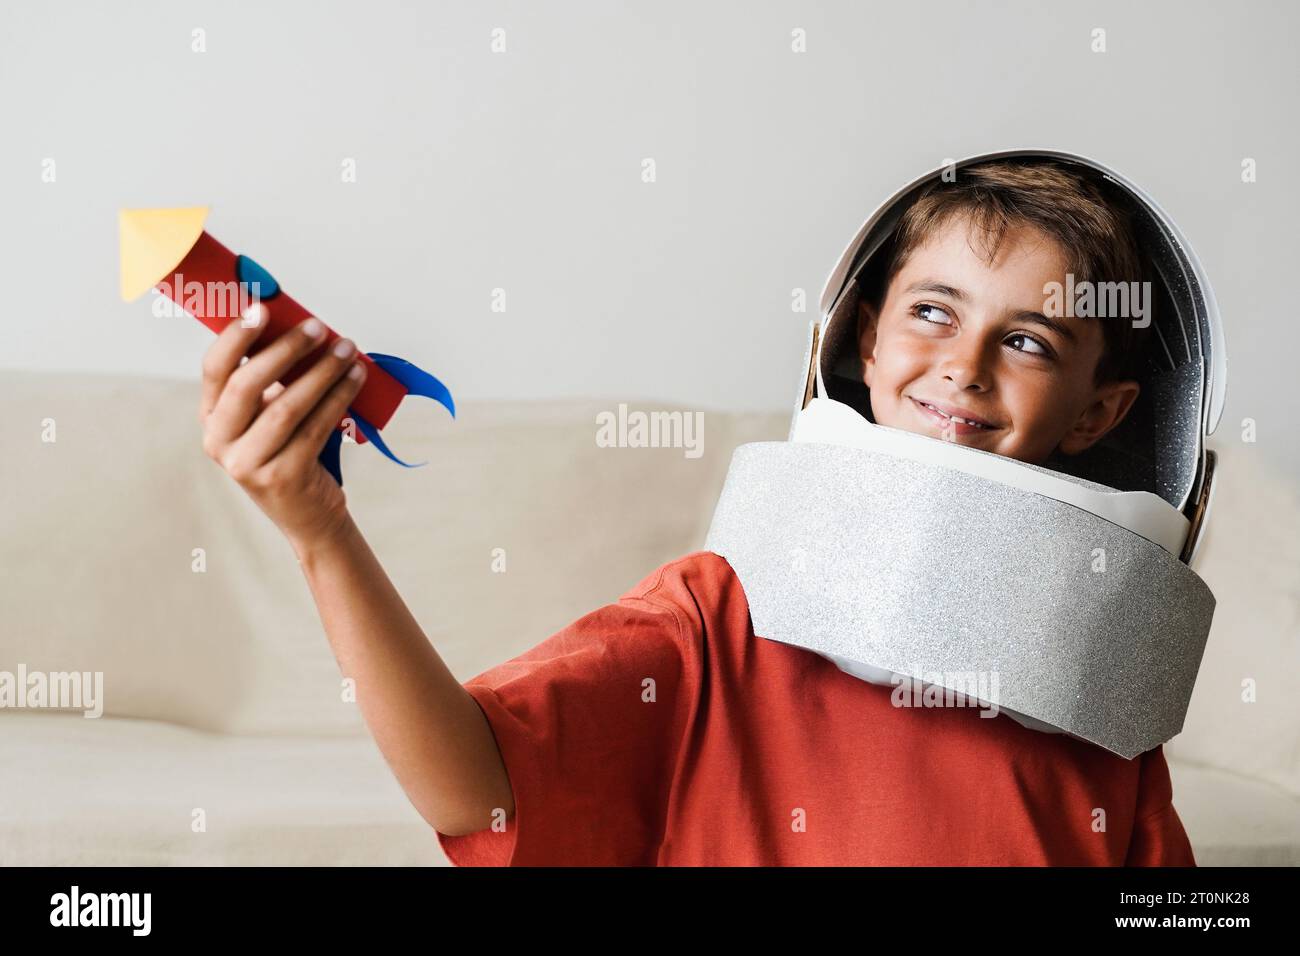 Bambino astronauta che gioca con il giocattolo del casco e il razzo astuto a casa - immaginazione dei bambini, concetto di viaggio spaziale sulla luna Foto Stock